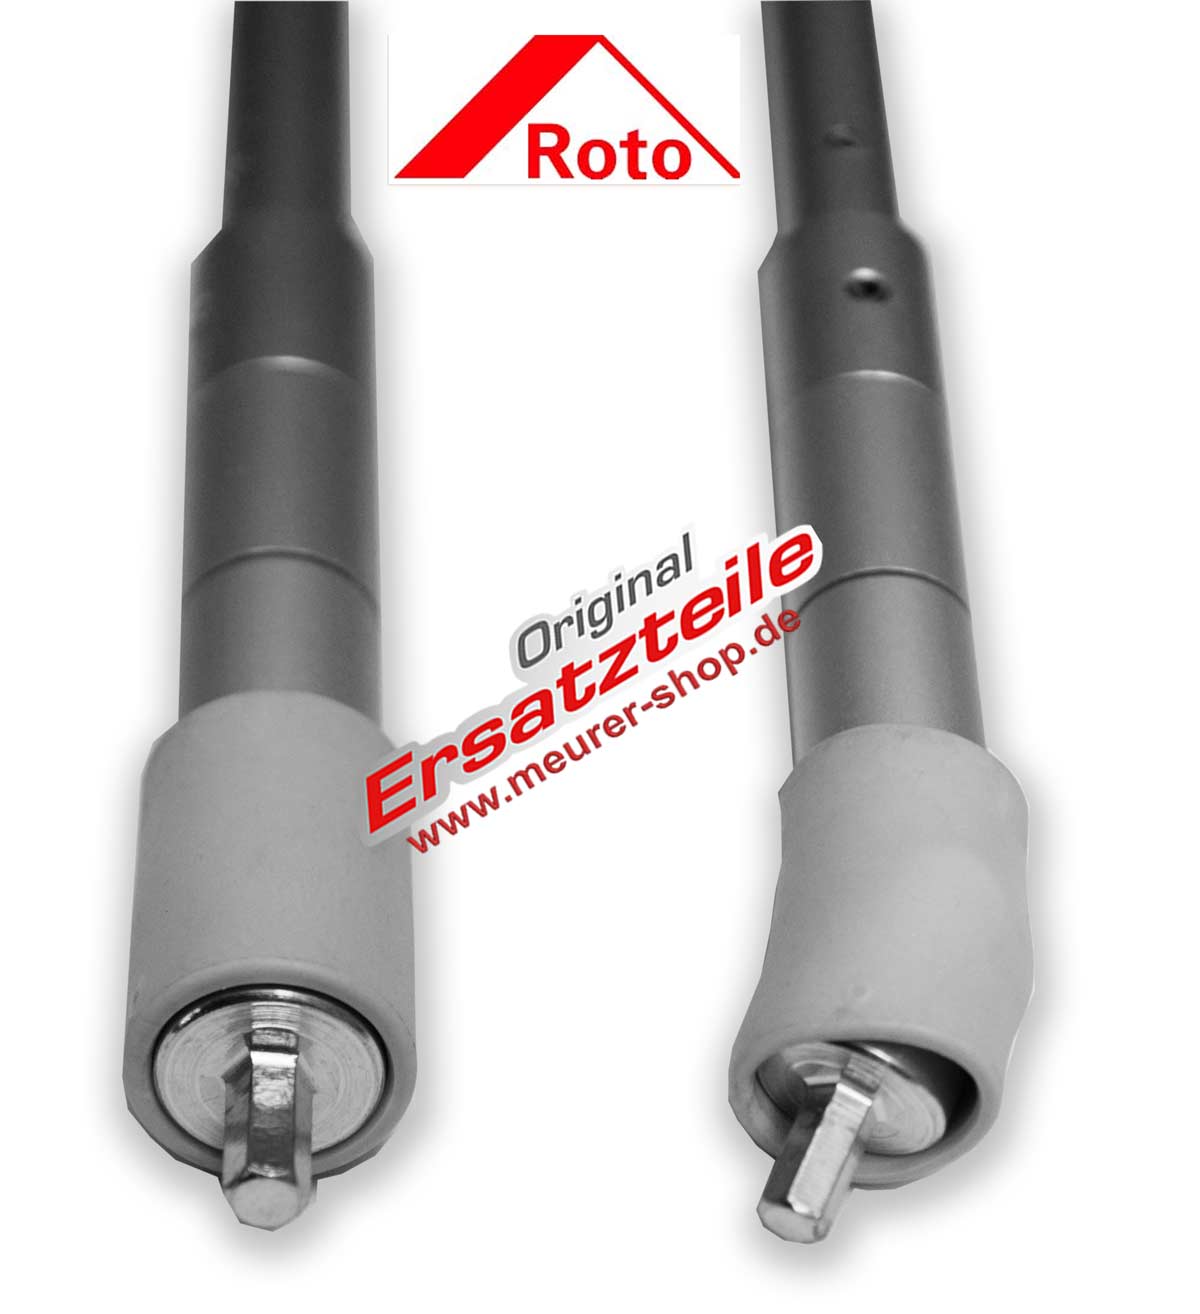 Rollladen-266189 für Roto Kurbel Therm RT1 M ZRO